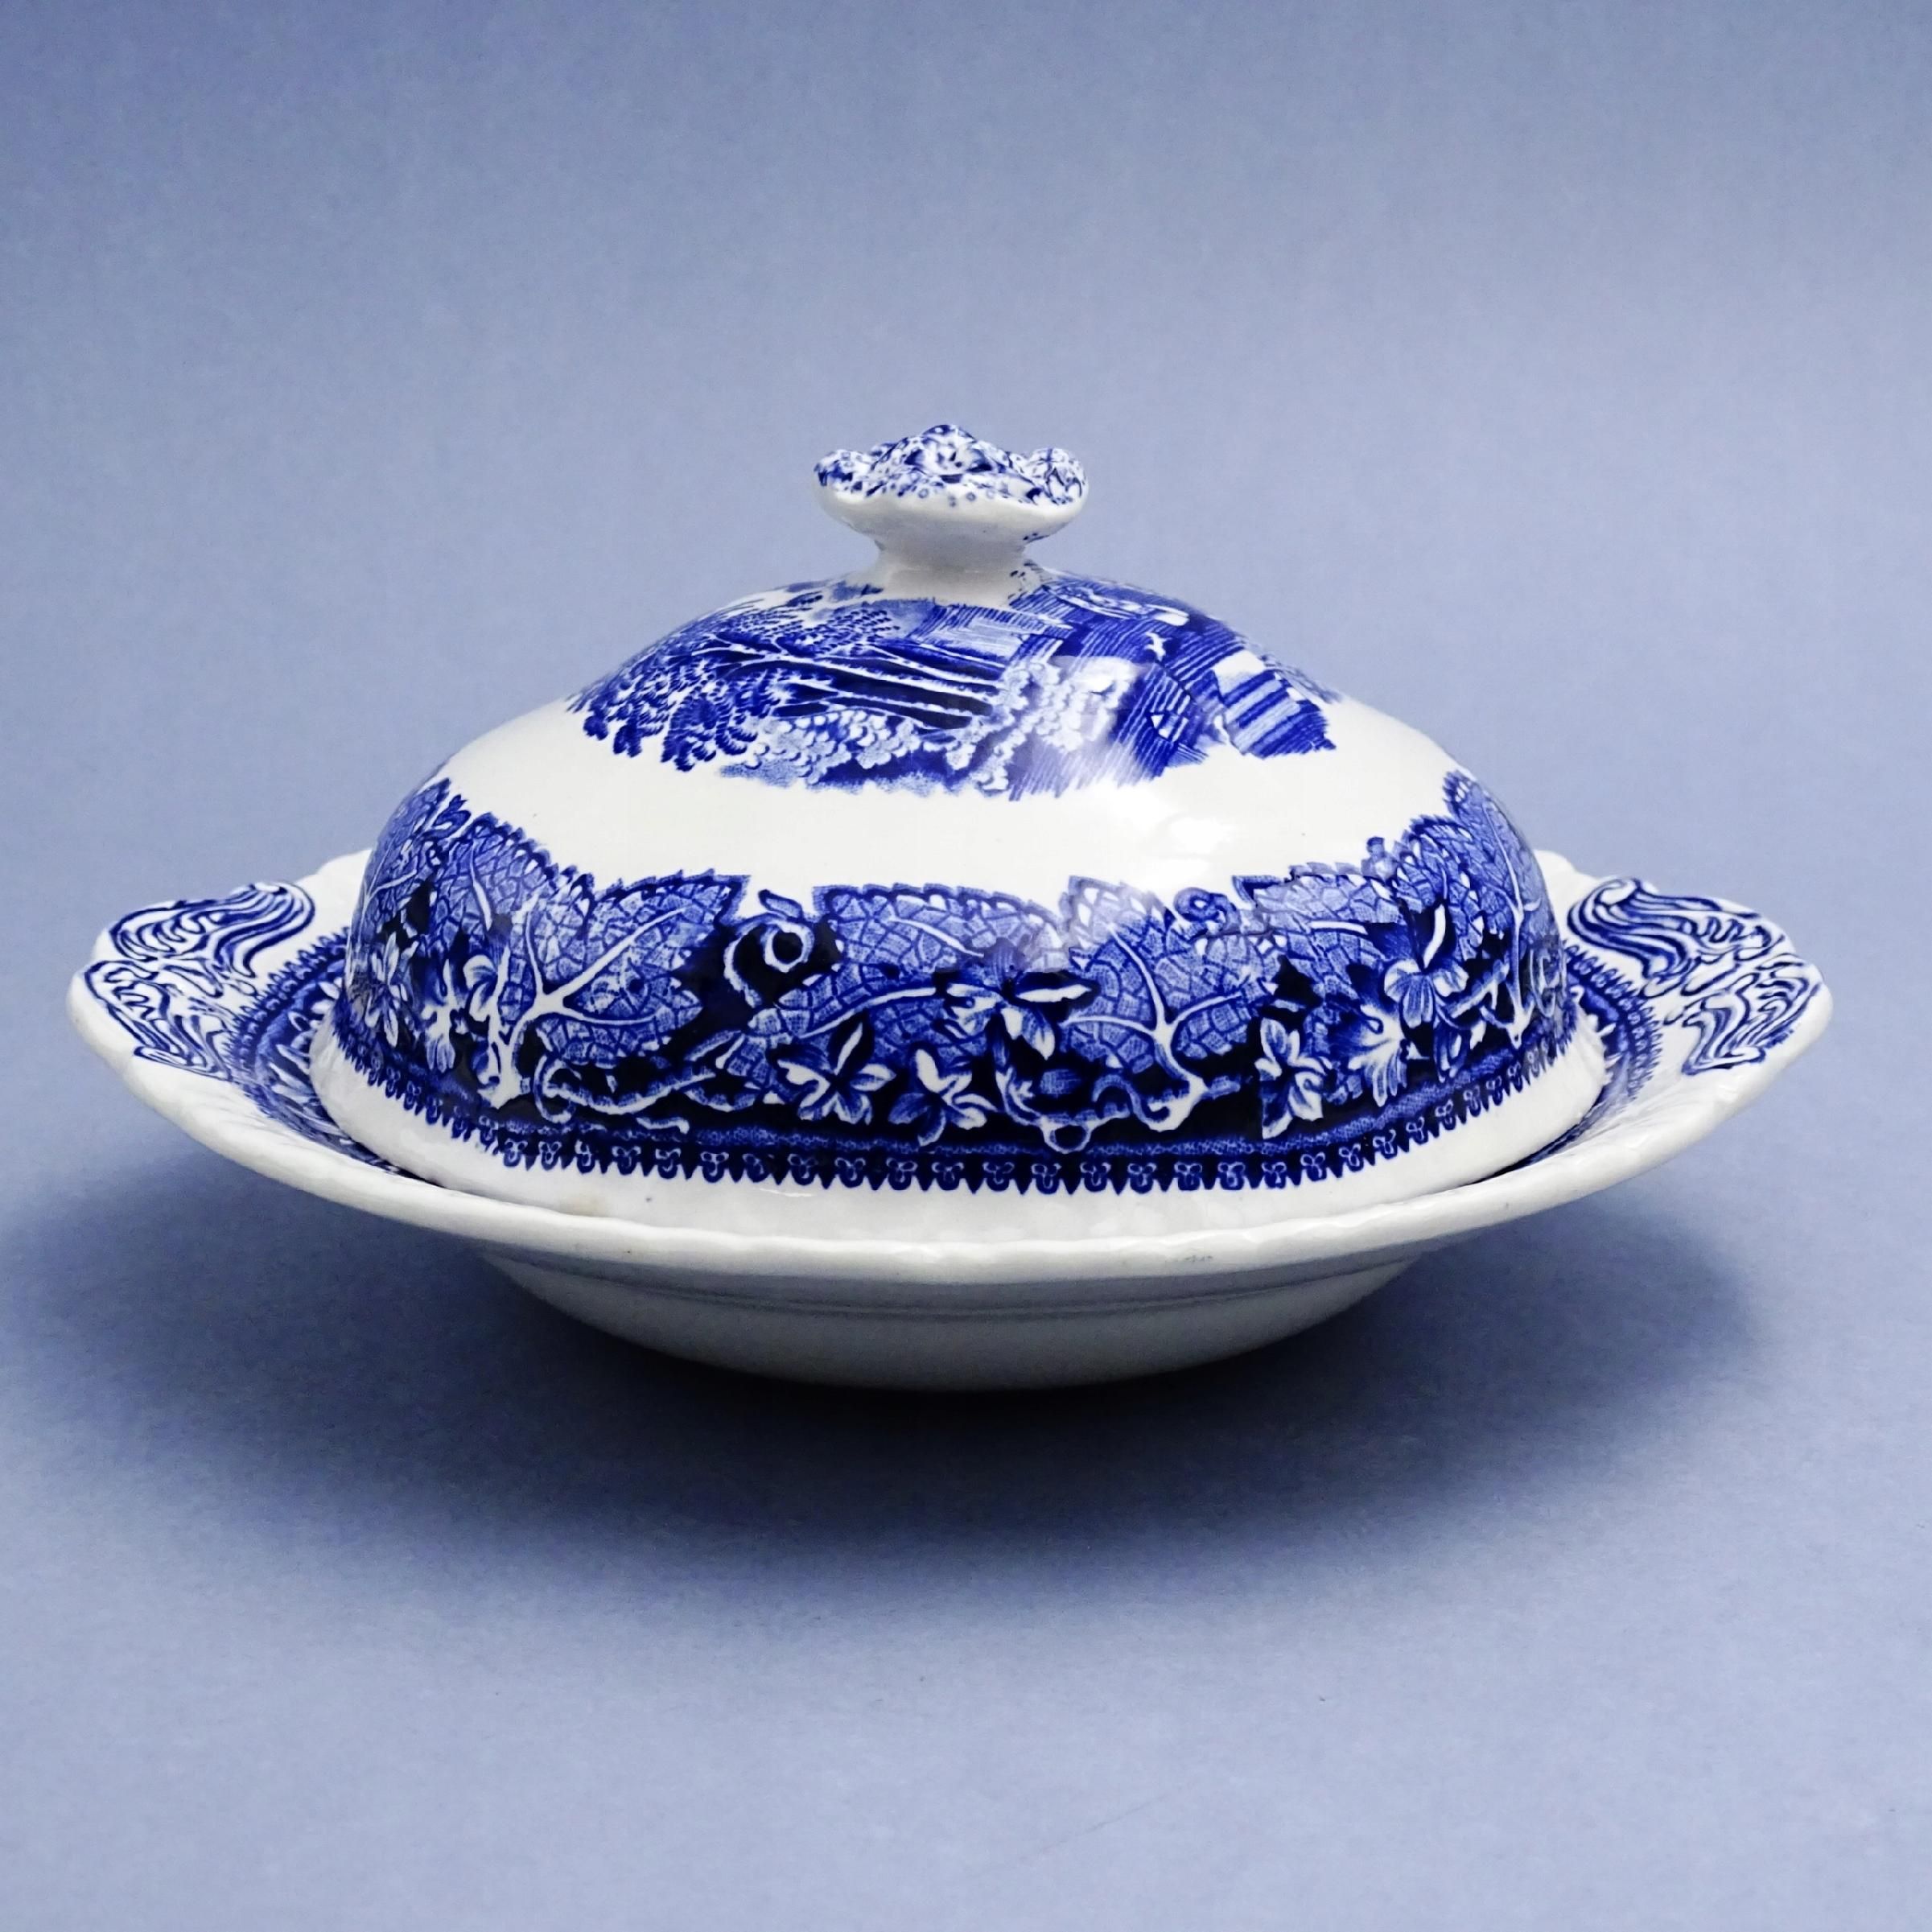 piękna ceramiczna waza naczynie z przyrywką kobalt anglia